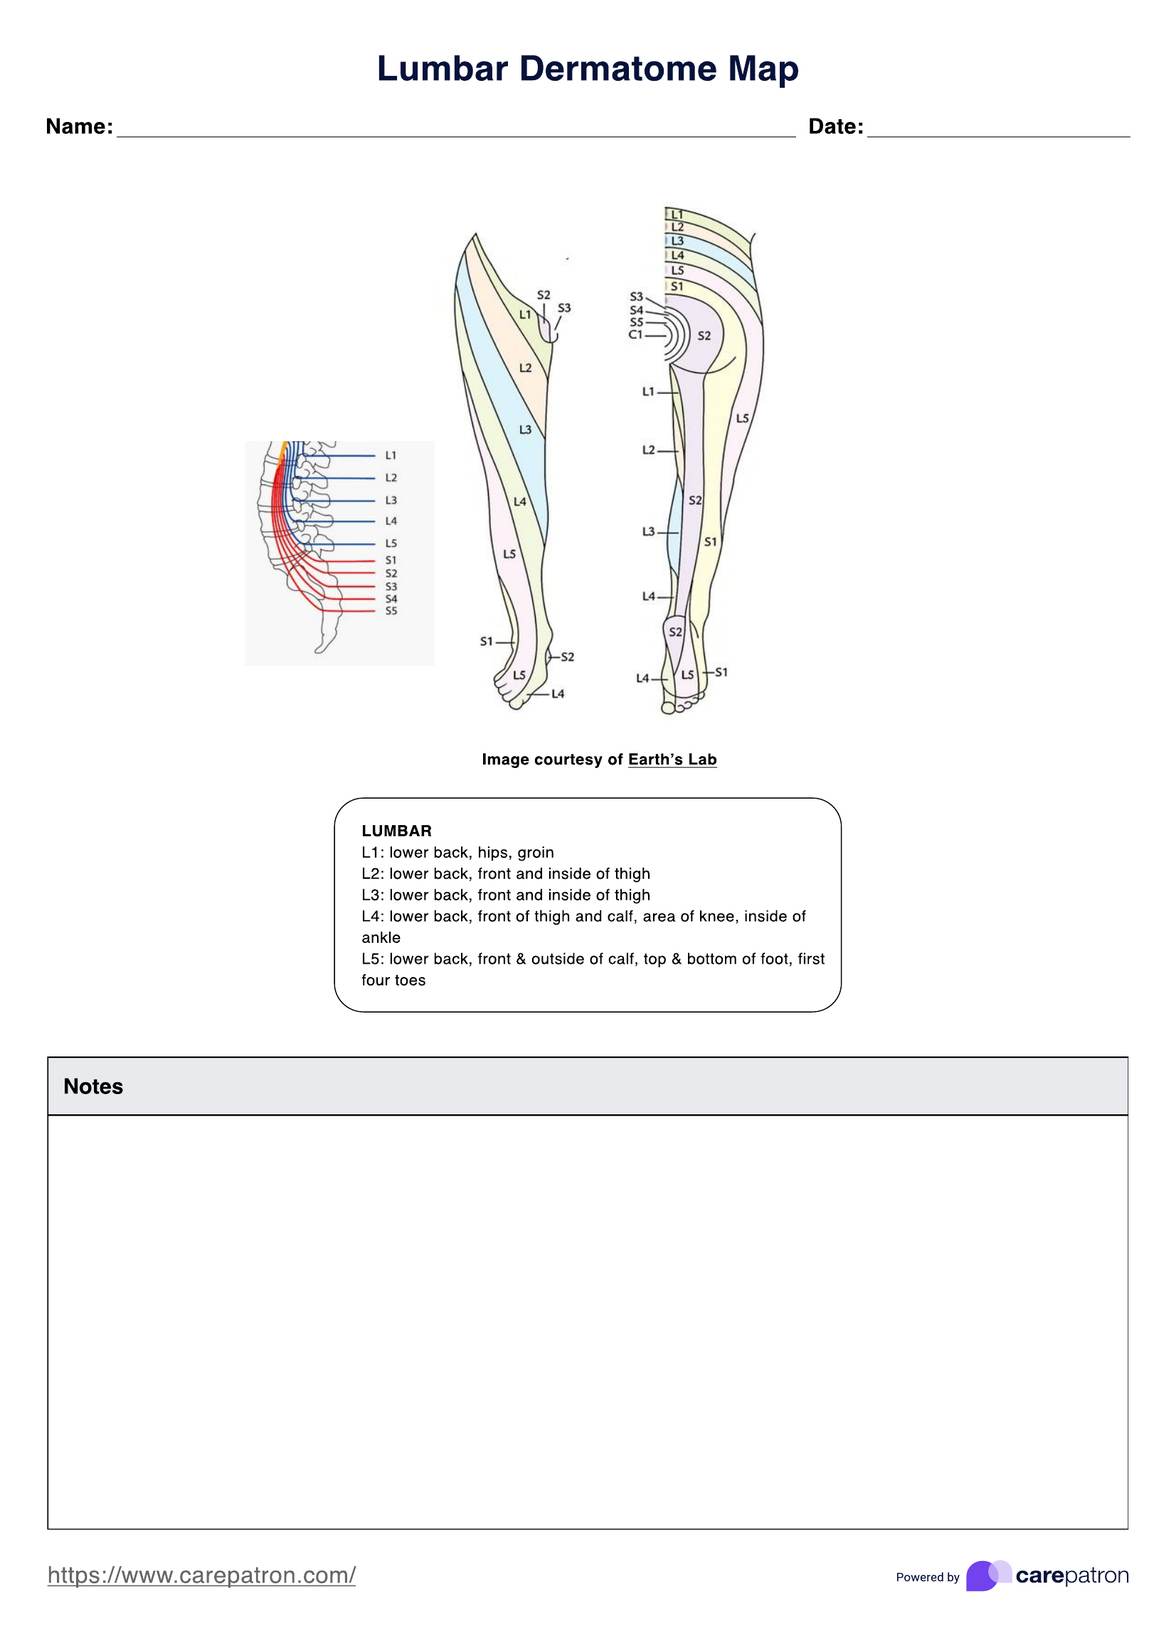 Lumbar Dermatome Map PDF Example